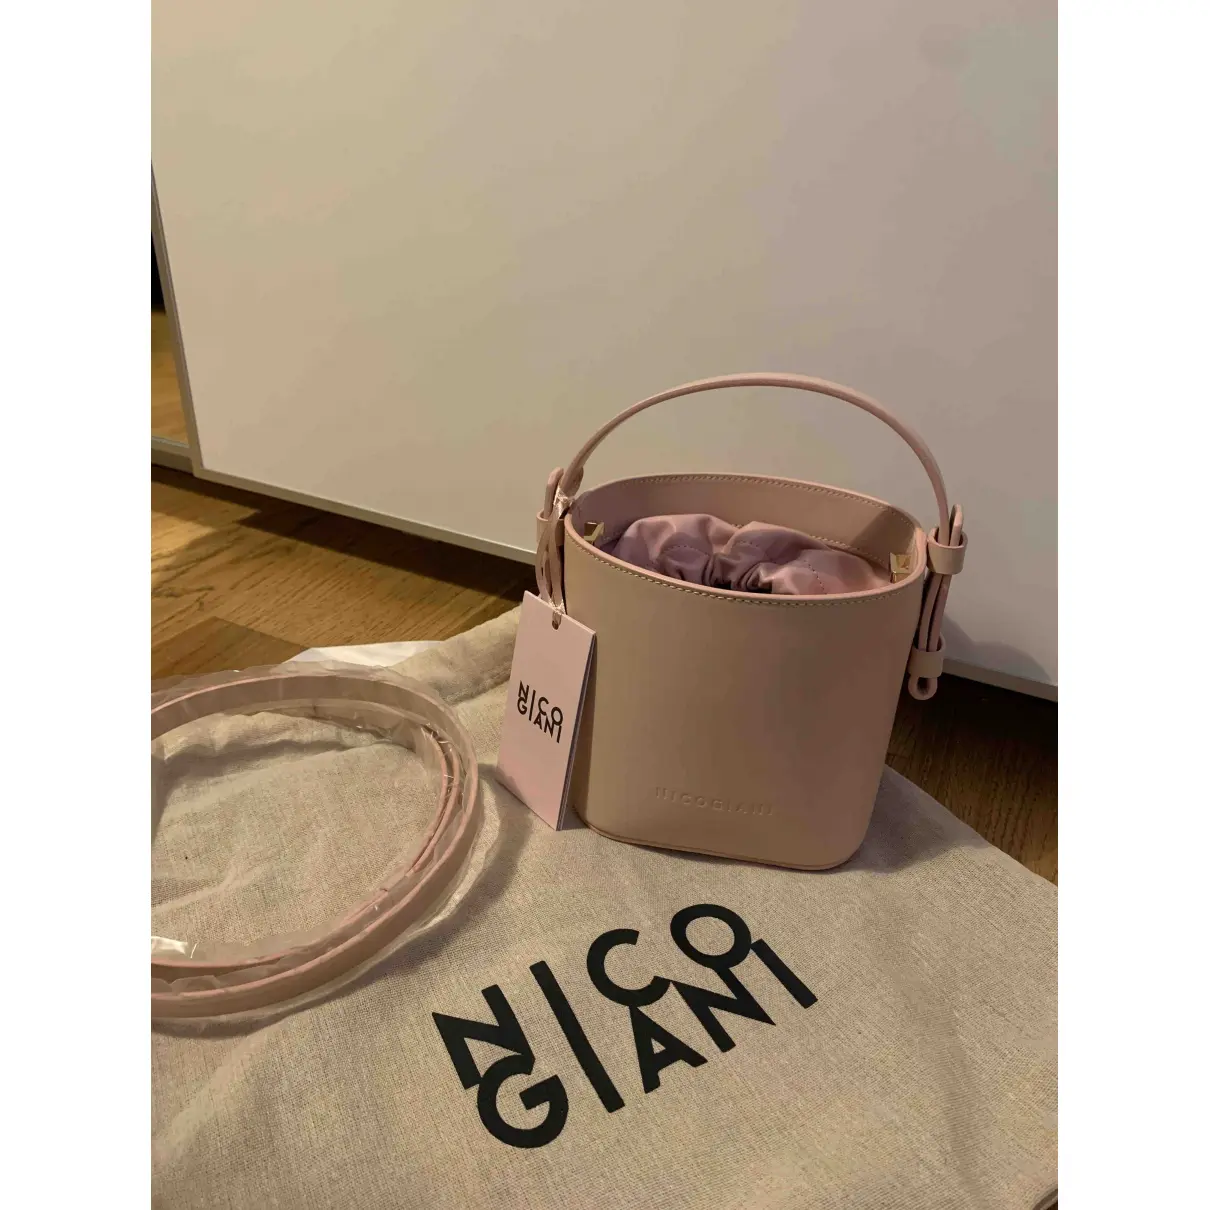 Buy Nico Giani Leather handbag online